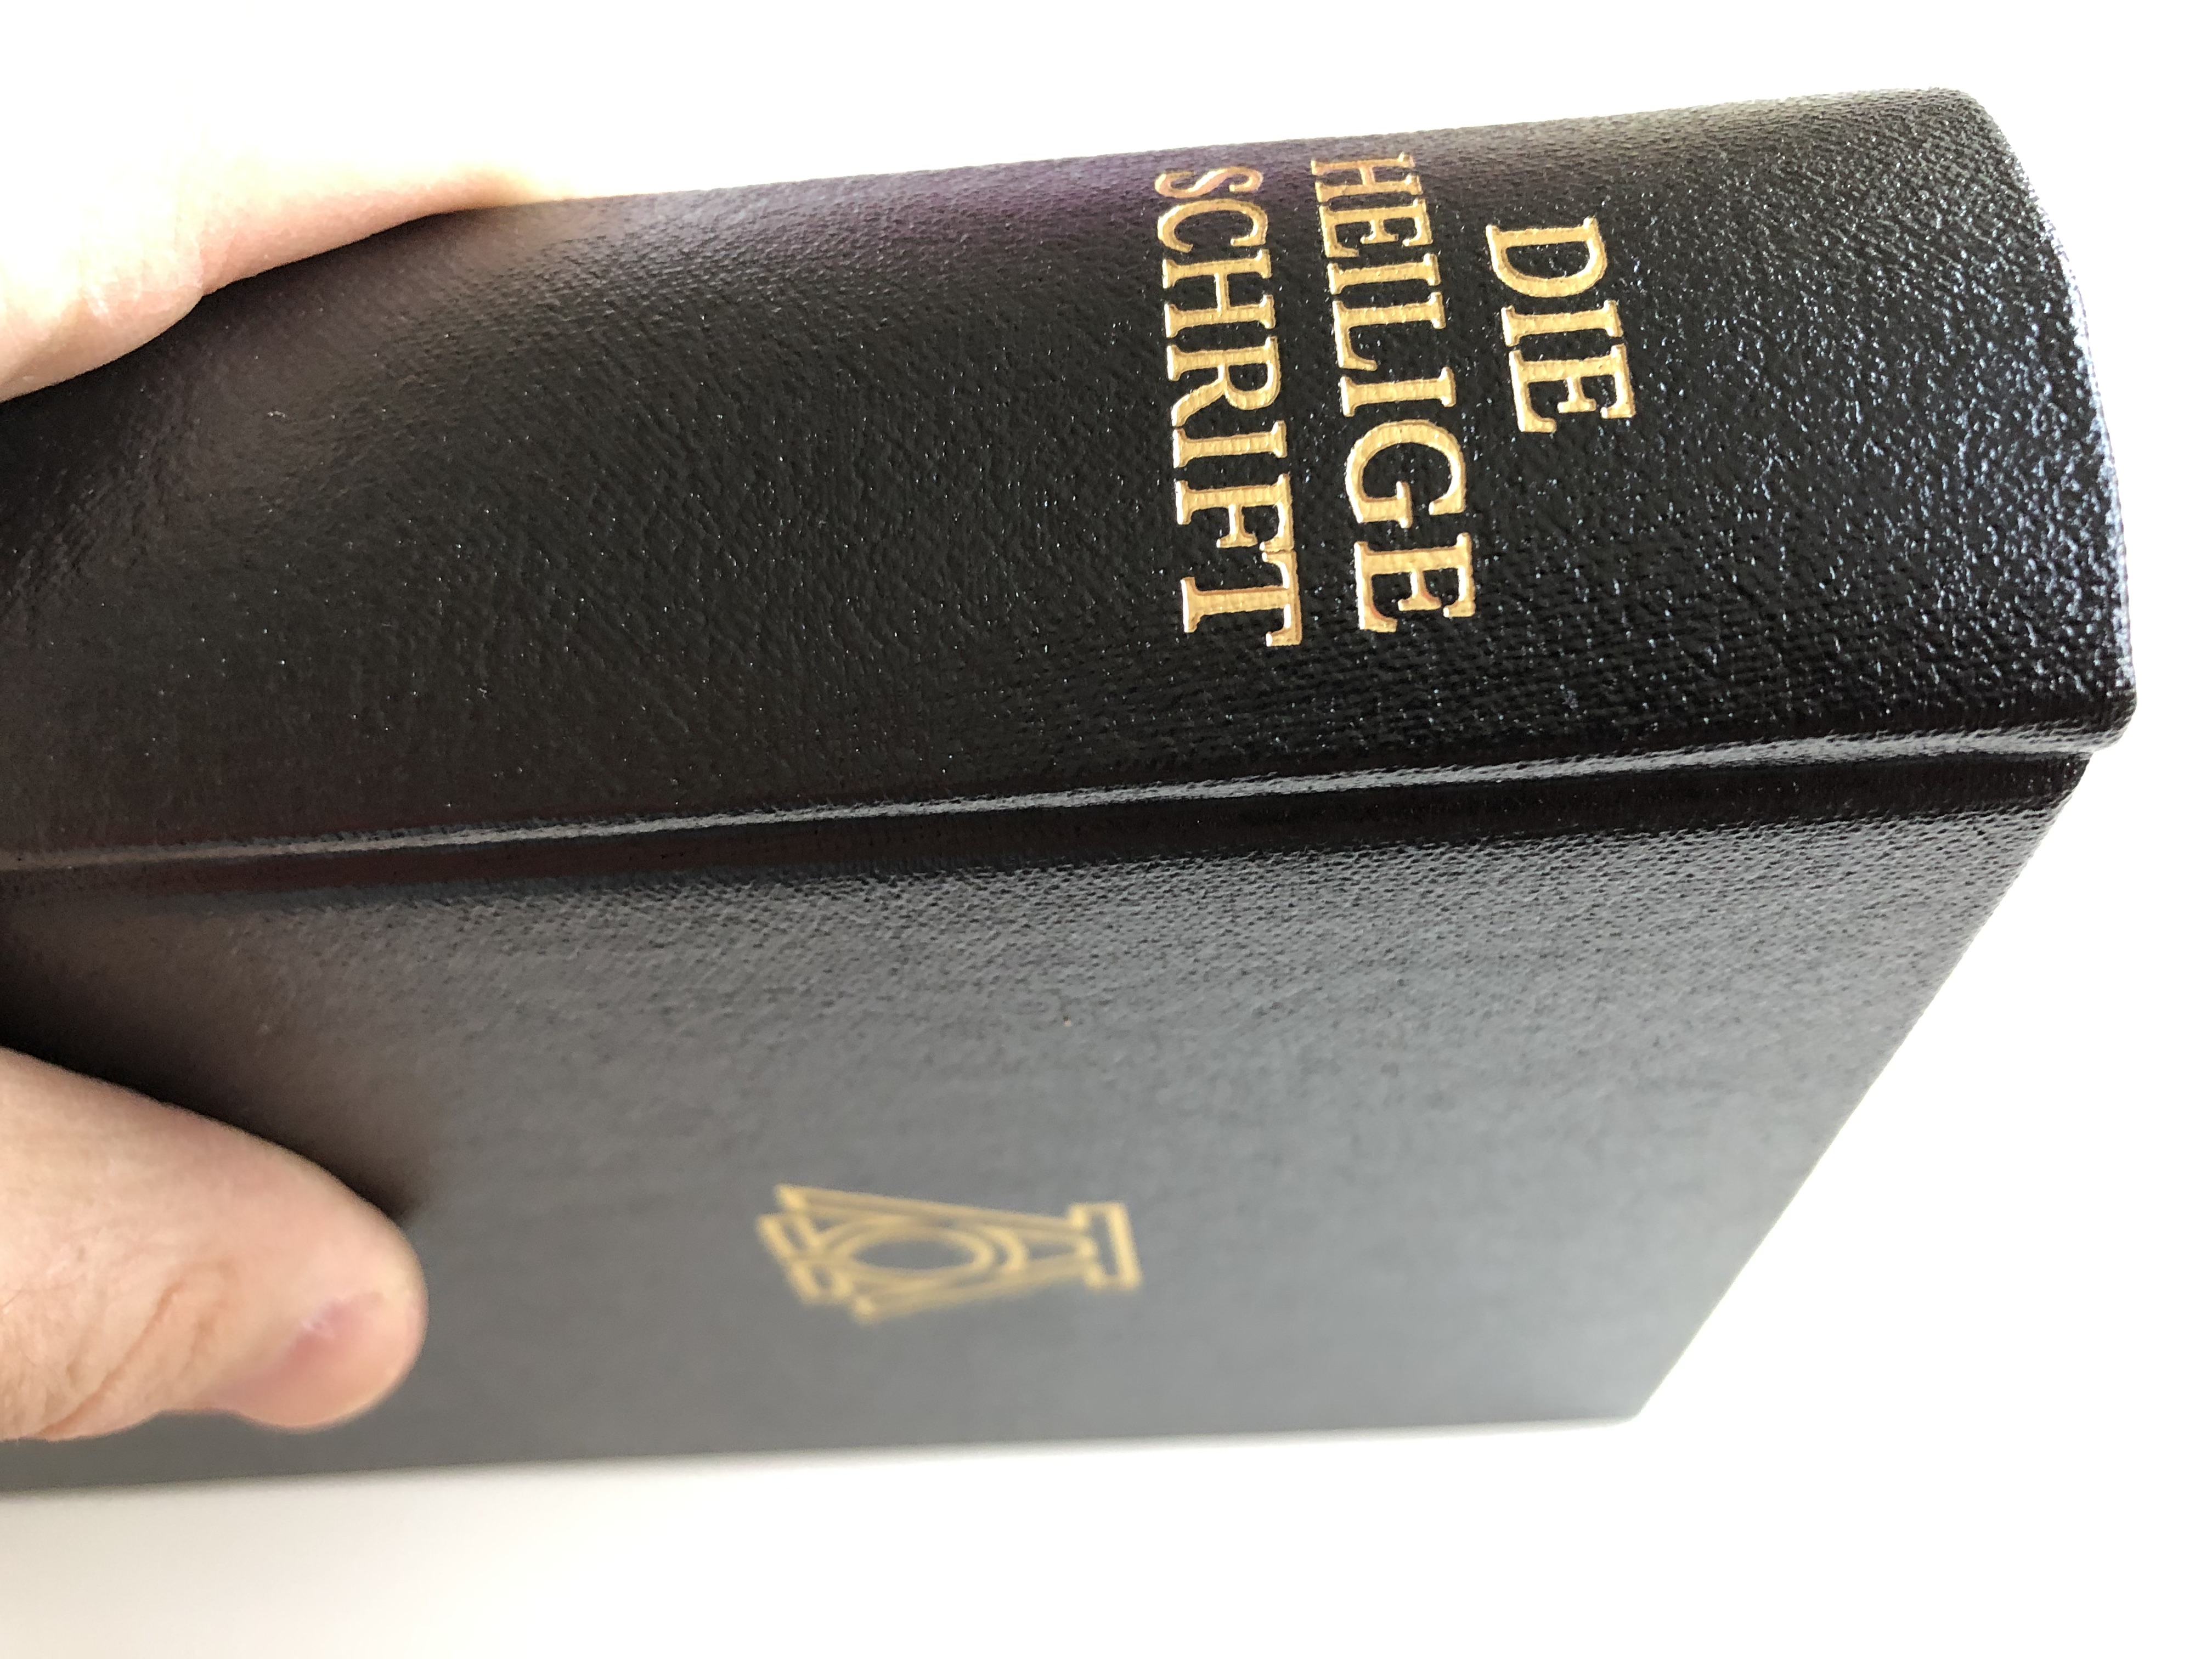 german-bible-die-bibel-die-heilige-schrift-ausgabe-von-1545-21-.jpg